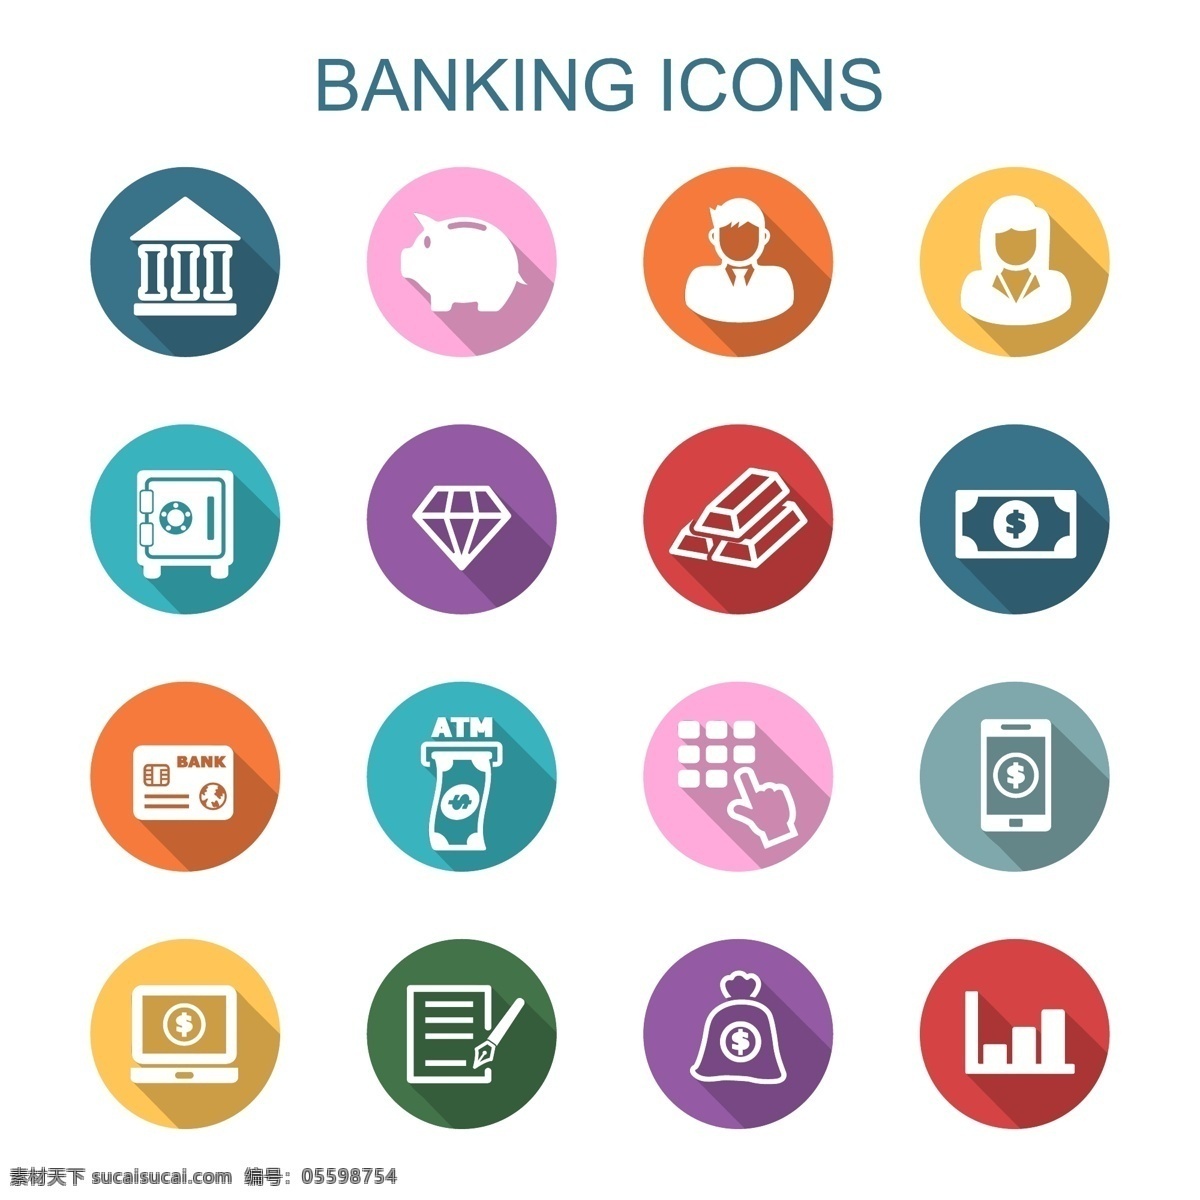 金融类 图标 集 图标设计 icon icon设计 icon图标 网页图标 建筑图标 金融图标 理财图标 钱袋图标 记事本图标 数据图标 用户图标